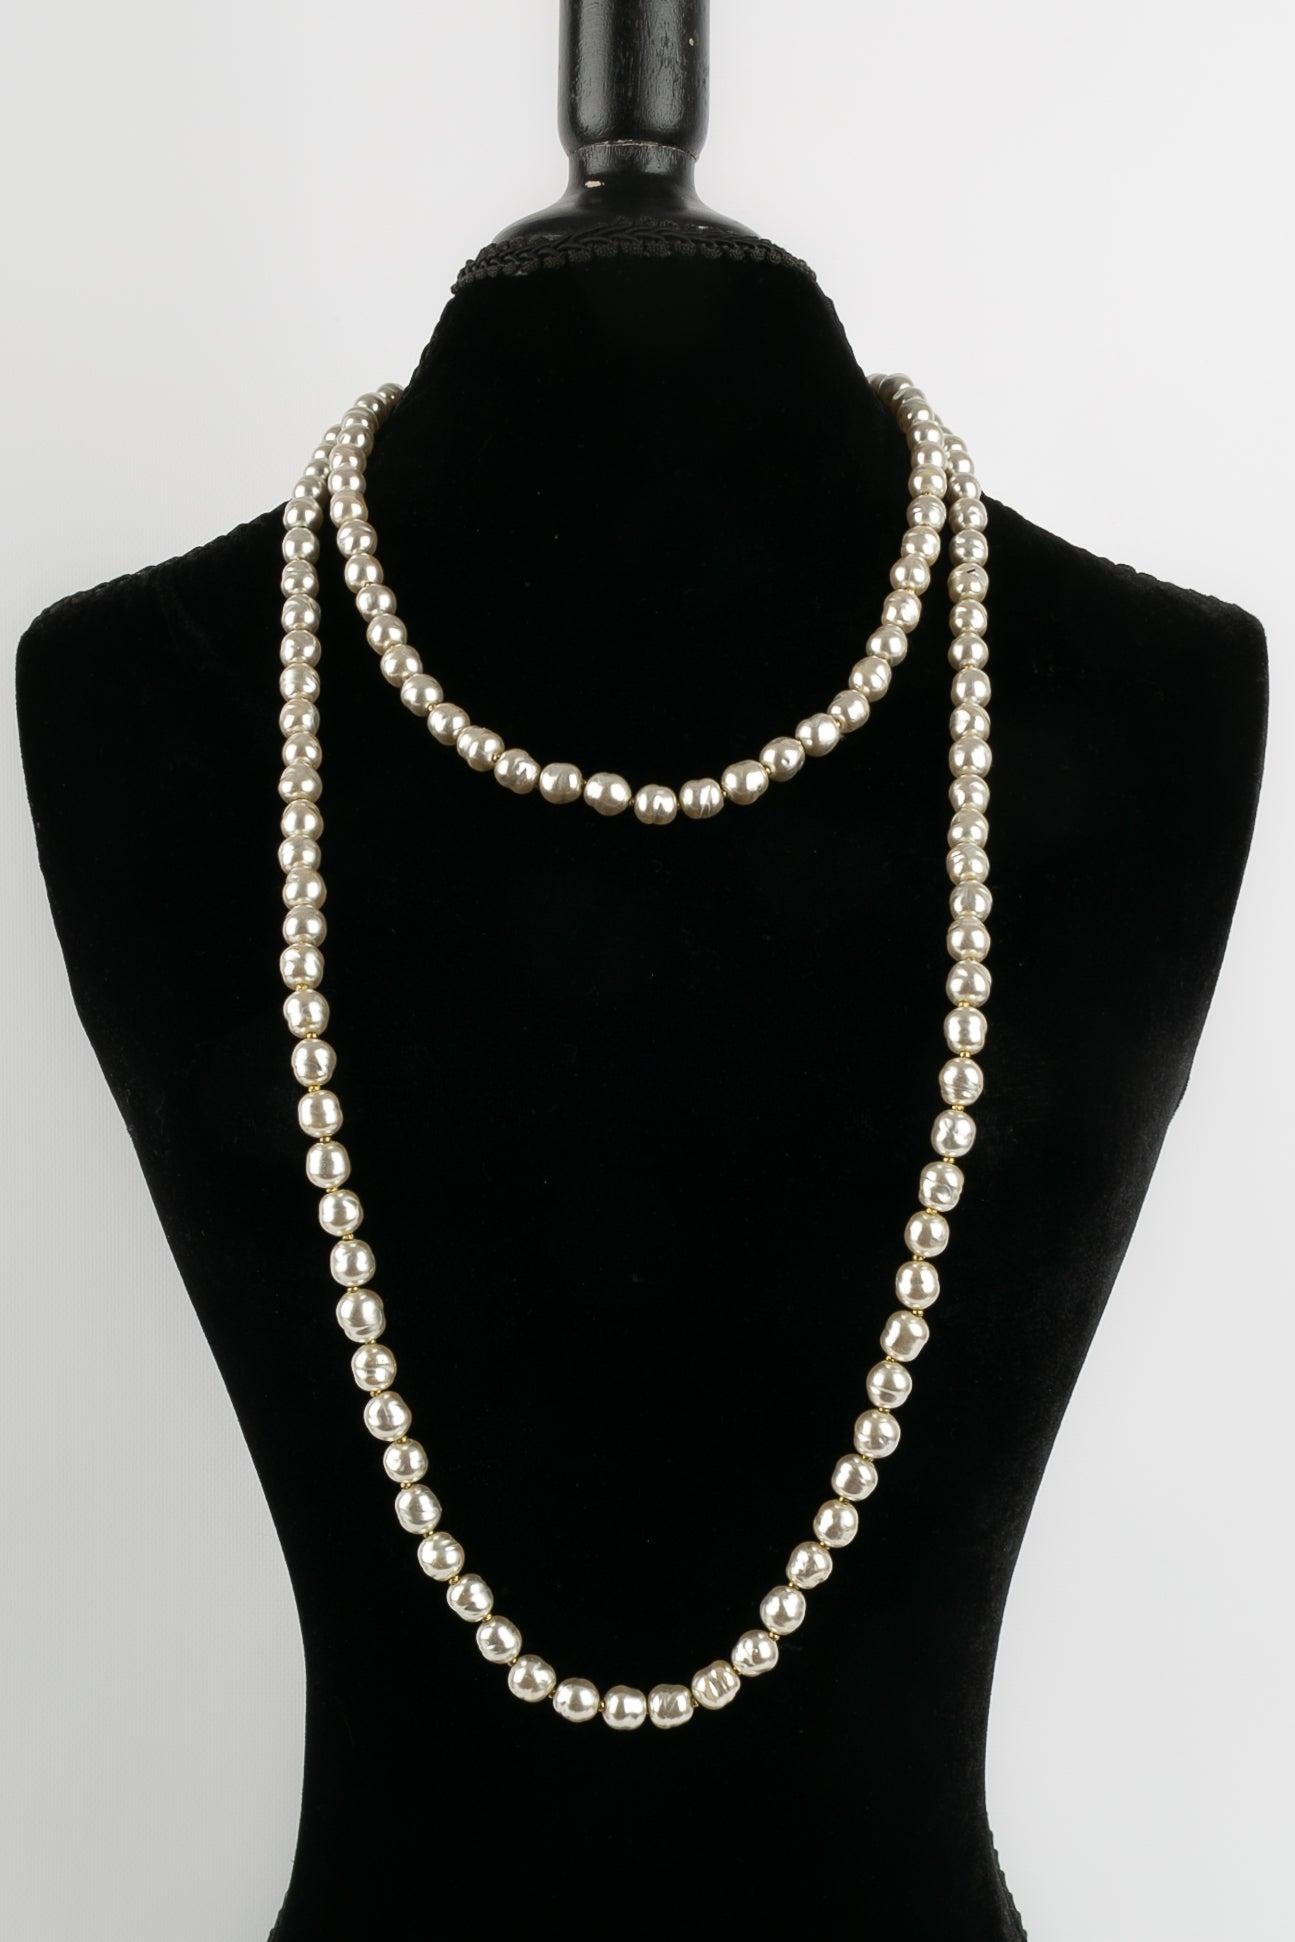 Chanel - Perlenkette mit Perlen in hellen Grautönen. Collection'S 1981.

Zusätzliche Informationen: 
Abmessungen: Länge: 157 cm
Zustand: Sehr guter Zustand
Sellers Ref-Nummer: CB106